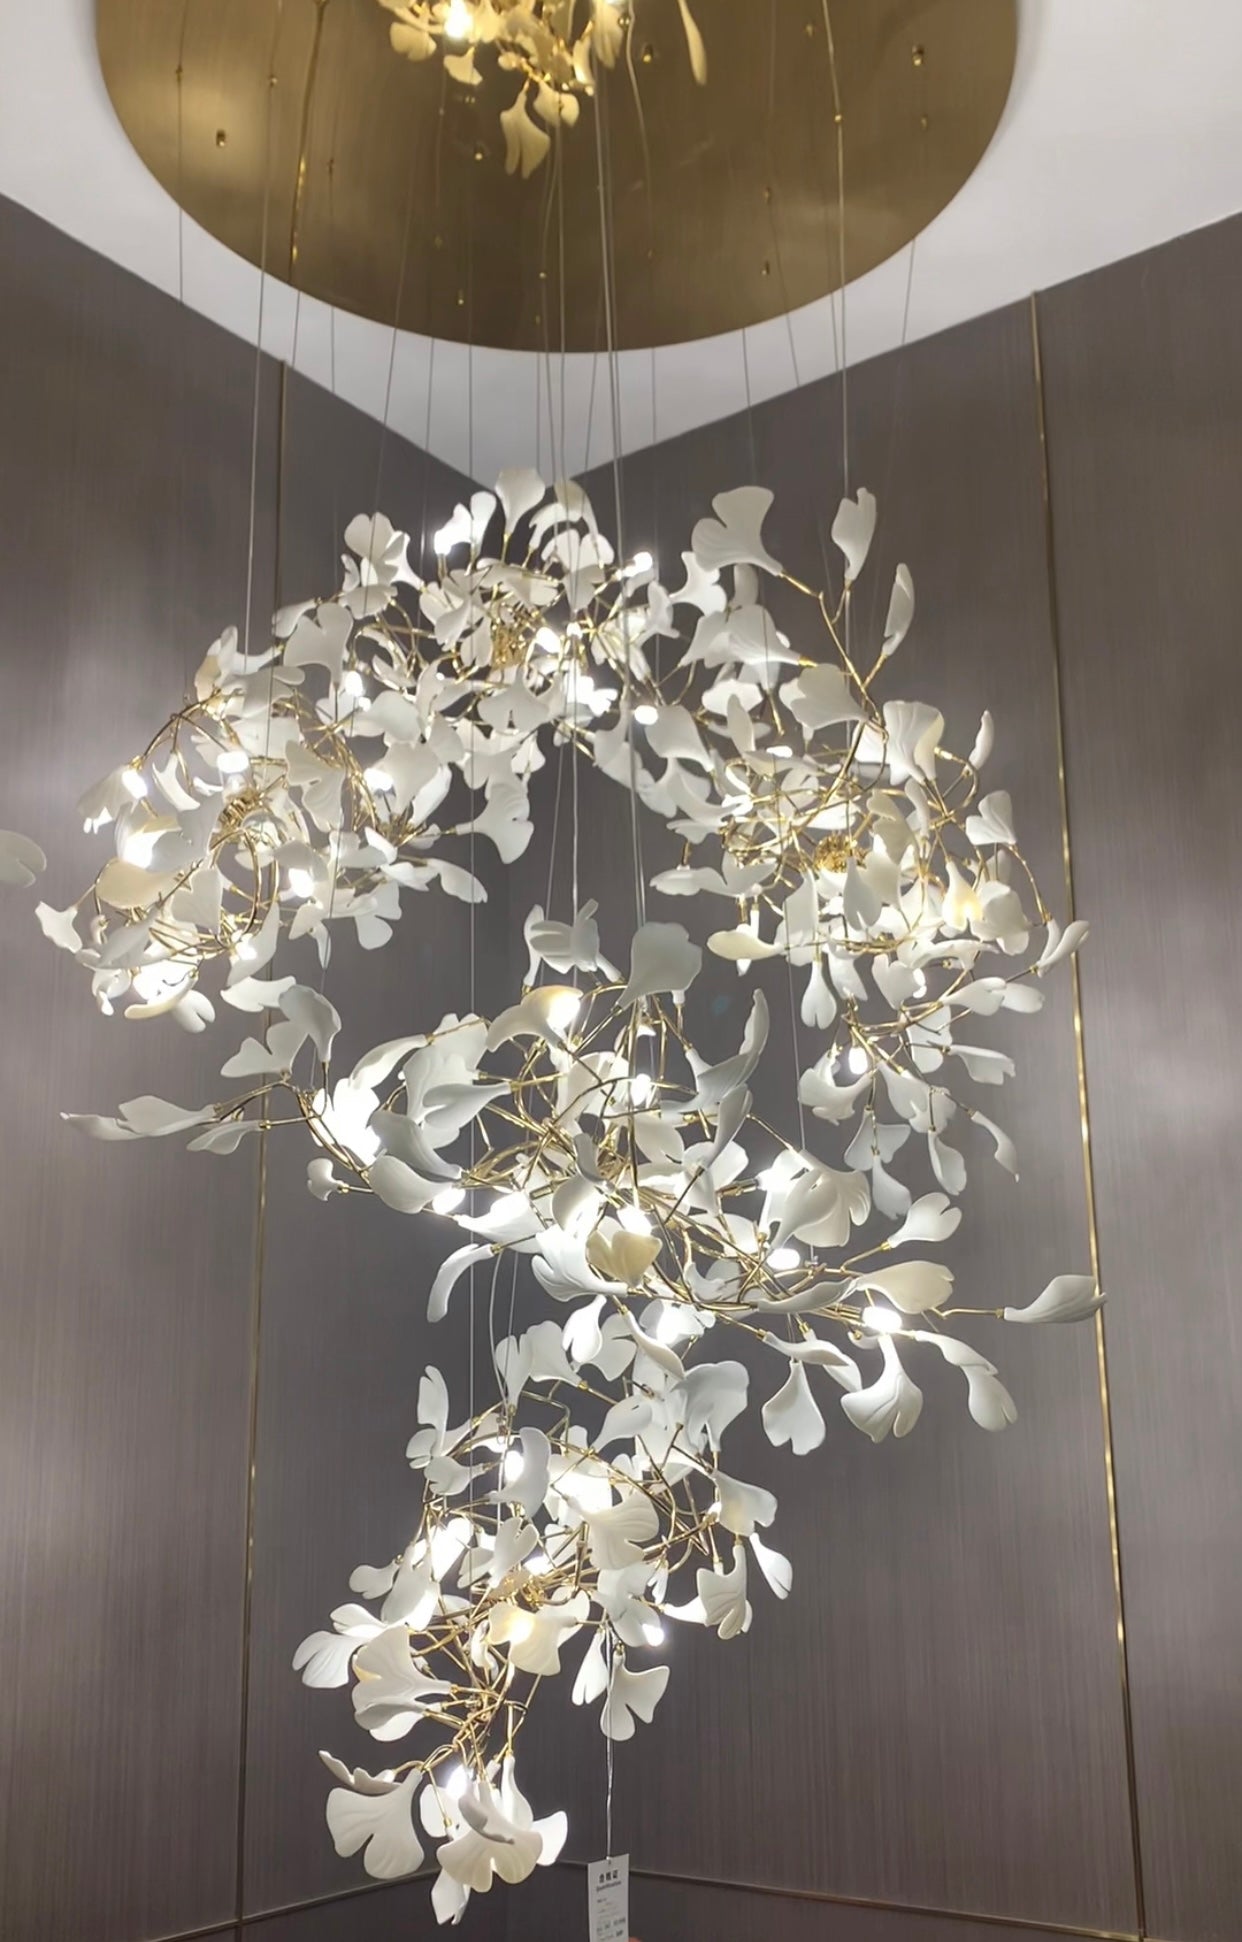 Gingko Leaf Flower Ceramics Chandelier For Foyer / Staircase /Hallway Chandeliers Kevinstudiolives   